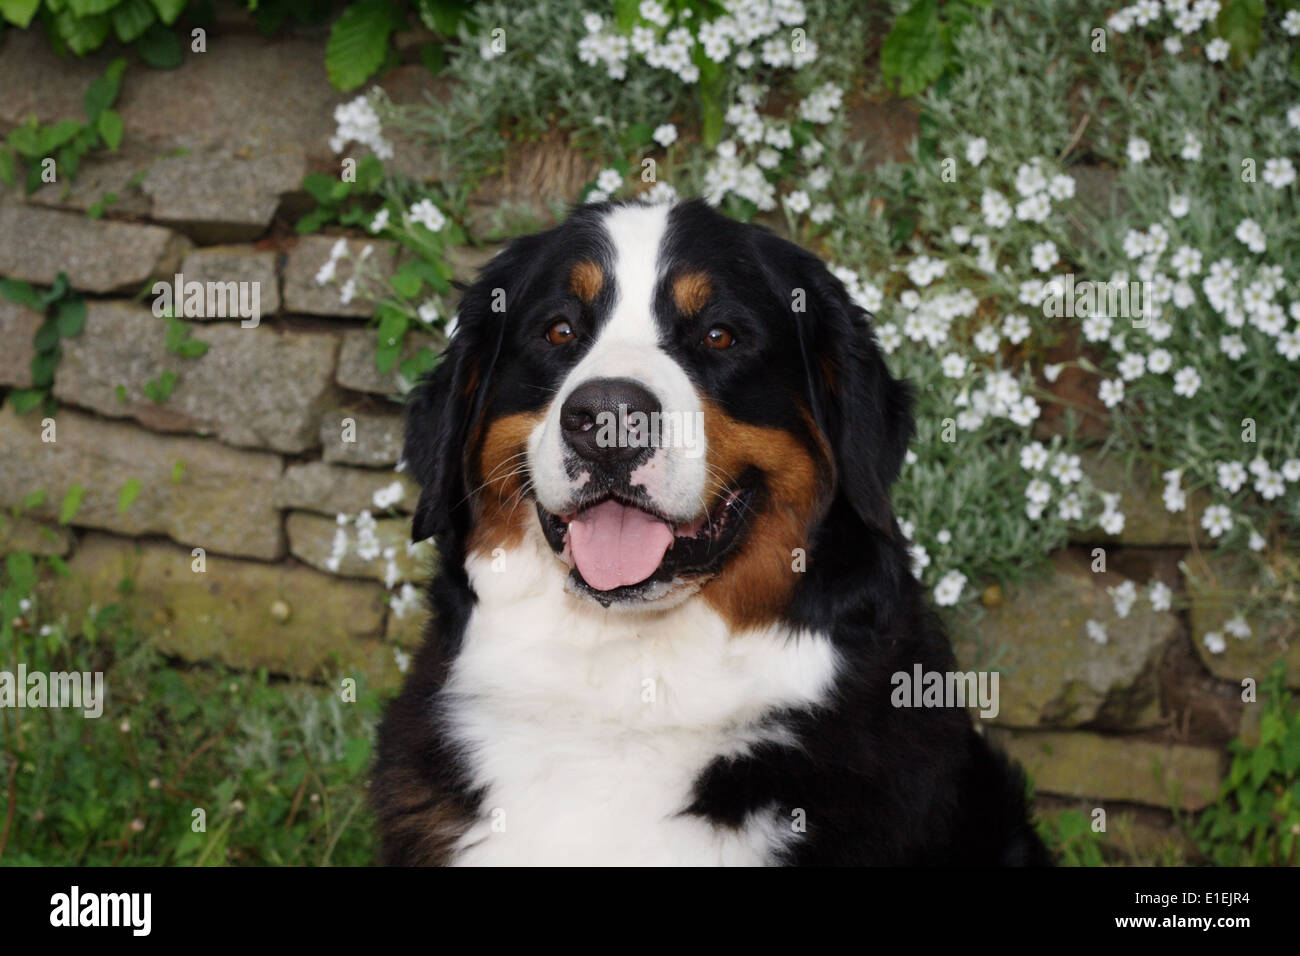 Porträt Berner Sennenhund im Garten vor einer Mauer mit weißen Blumen Stock Photo